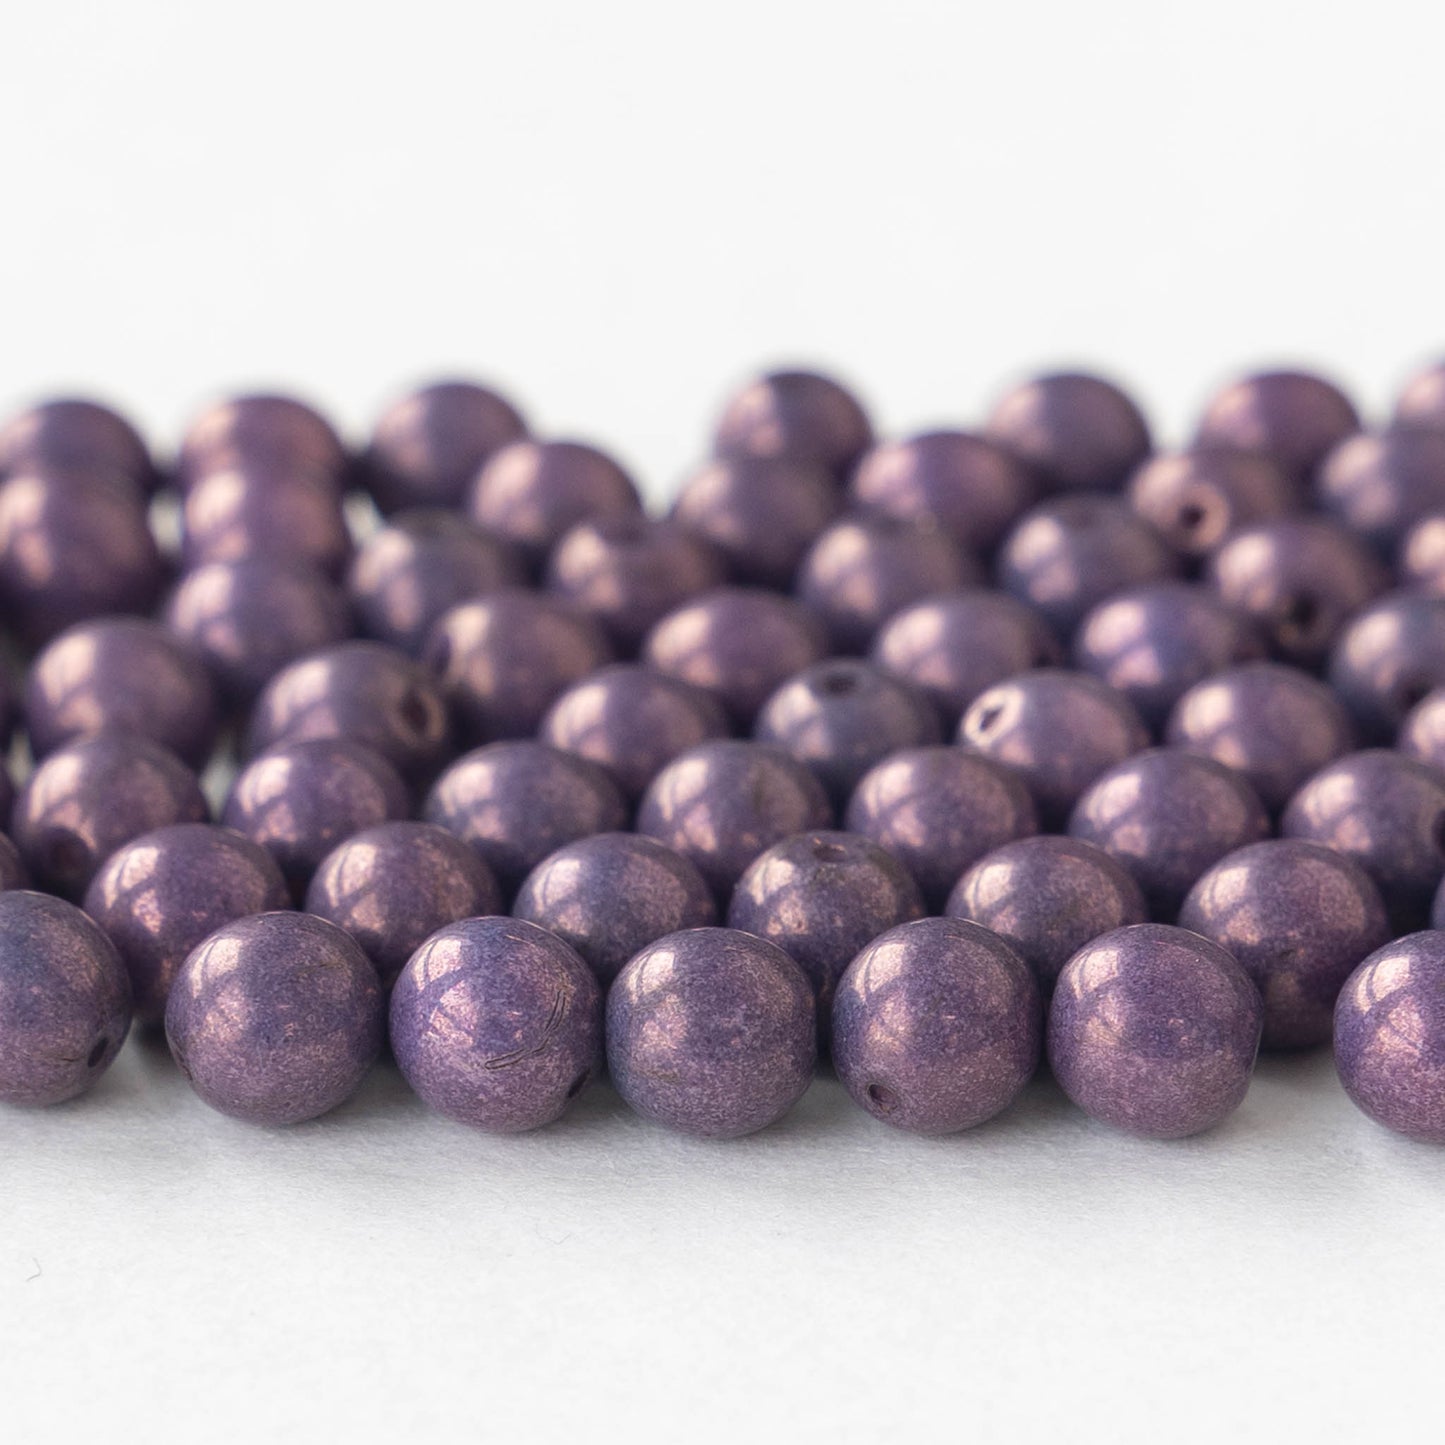 6mm Round Glass Beads - Dark Purple - 50 Beads